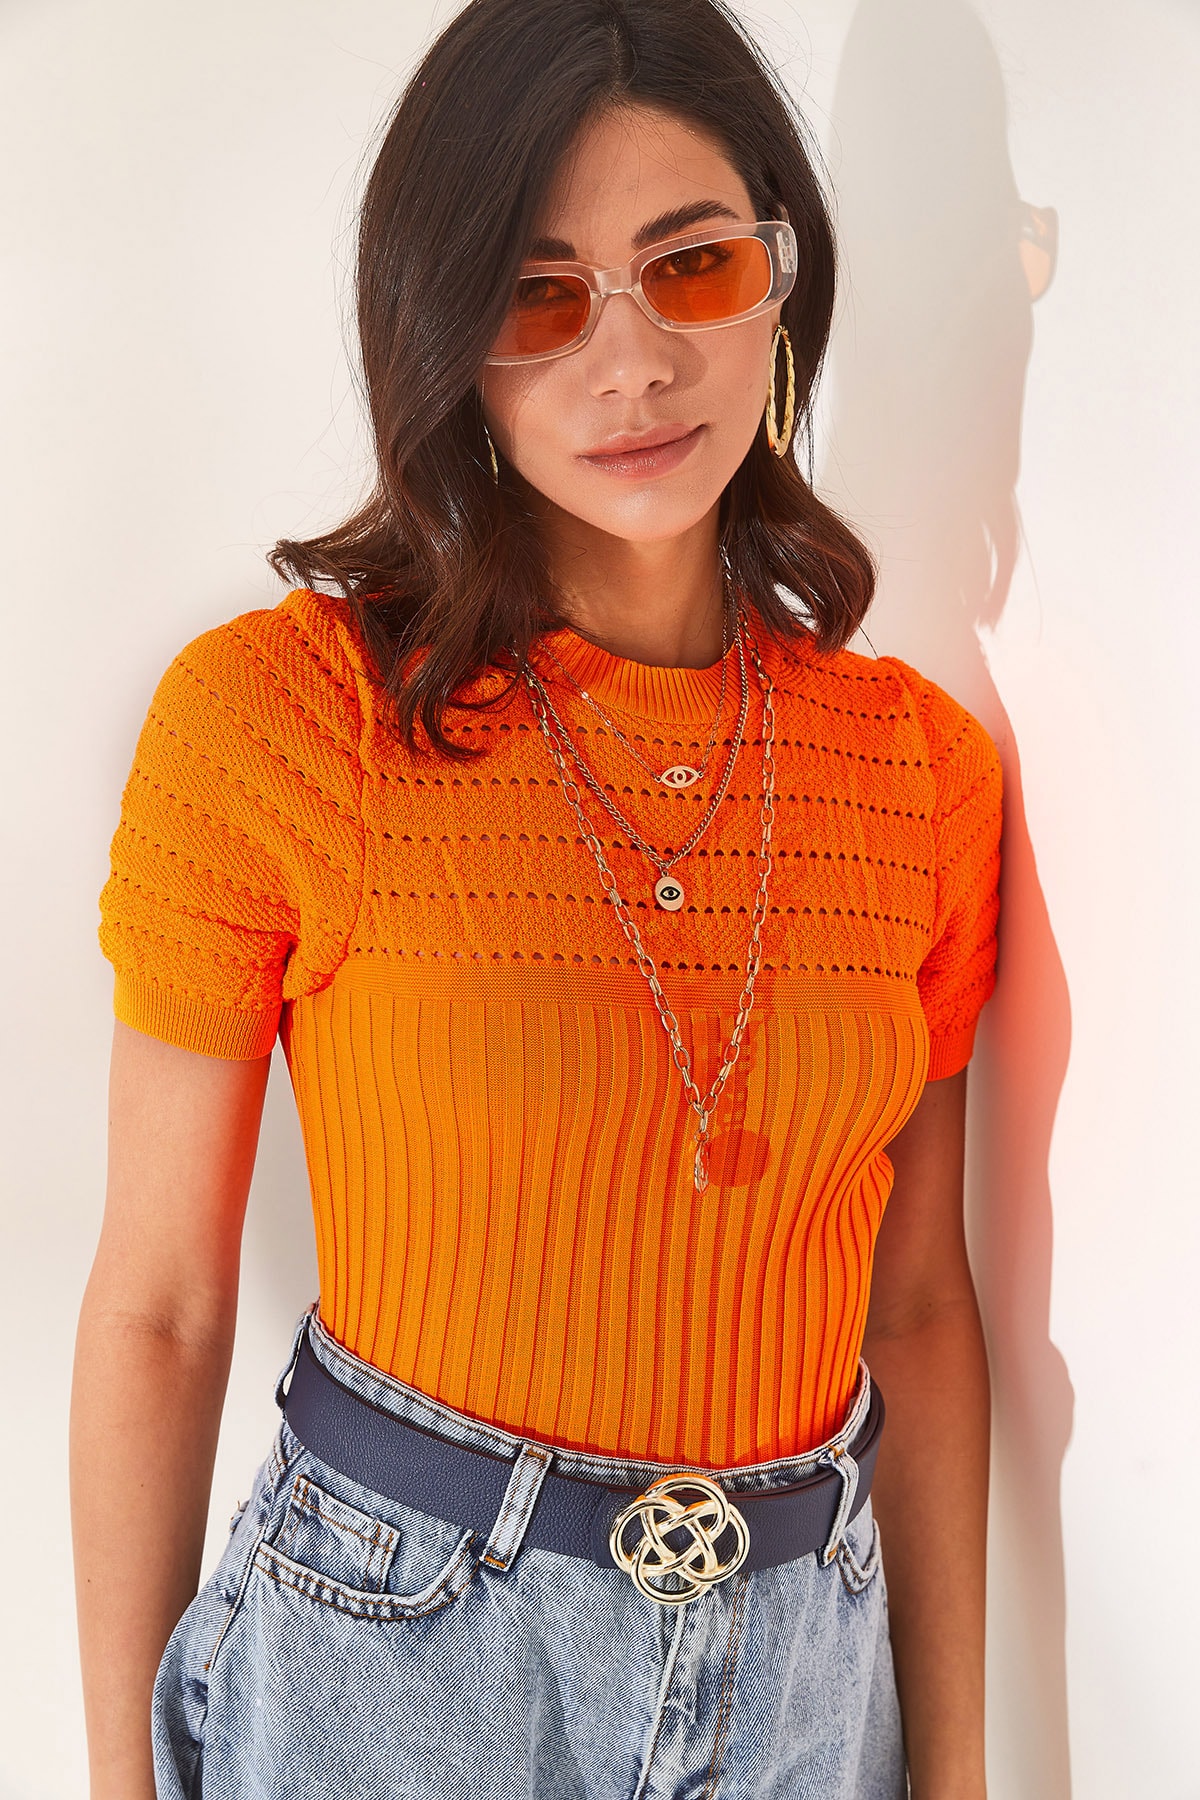 Женская оранжевая ажурная трикотажная блузка в рубчик Olalook, оранжевый